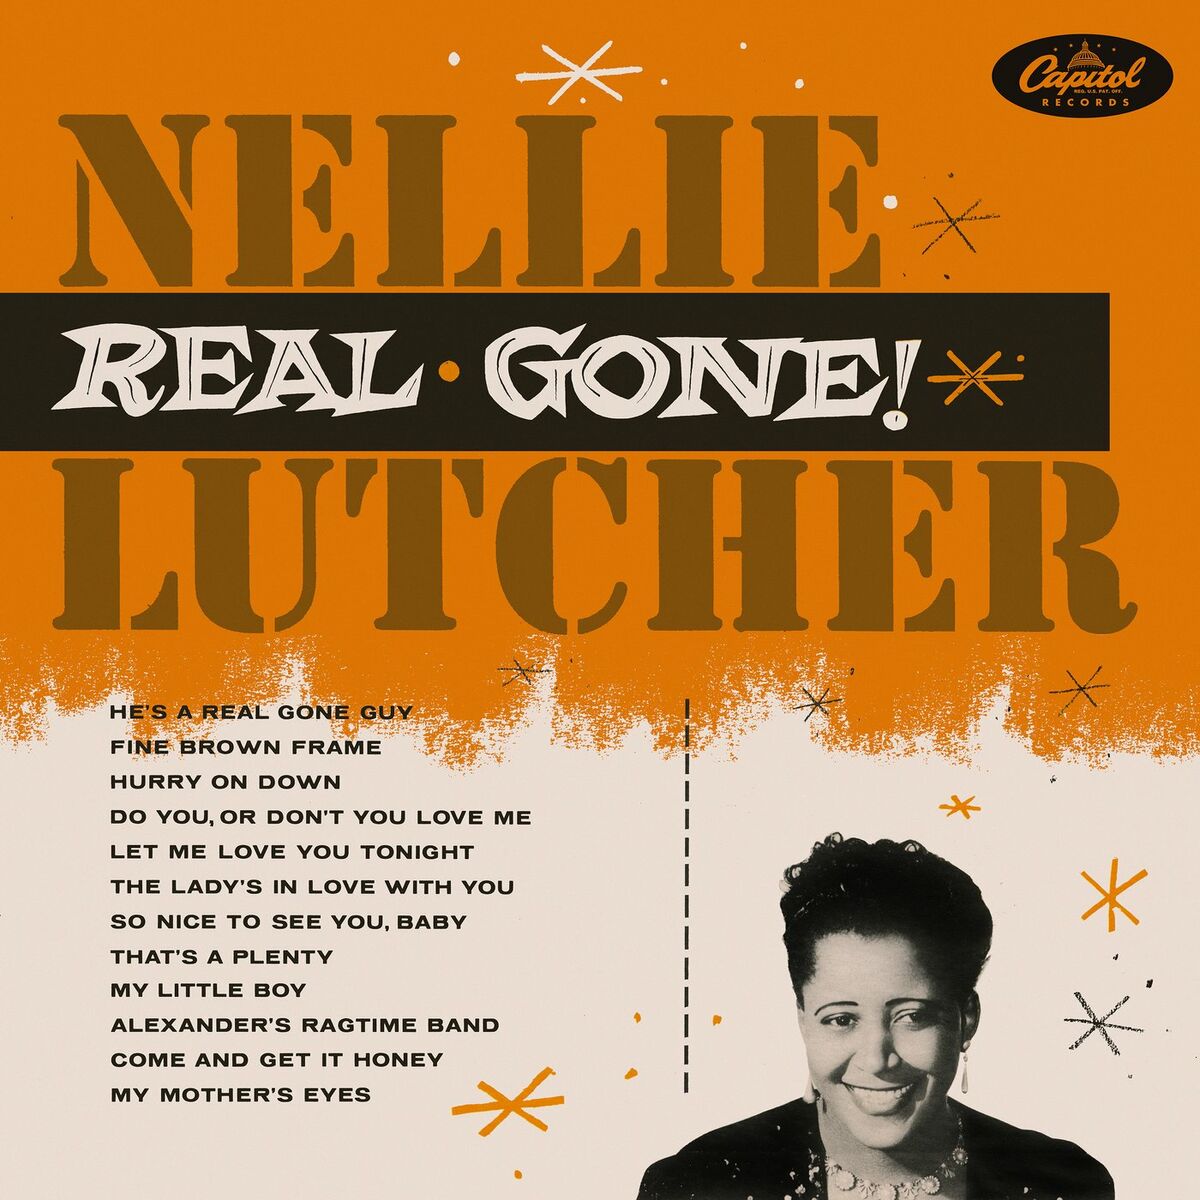 Nellie Lutcher: albums